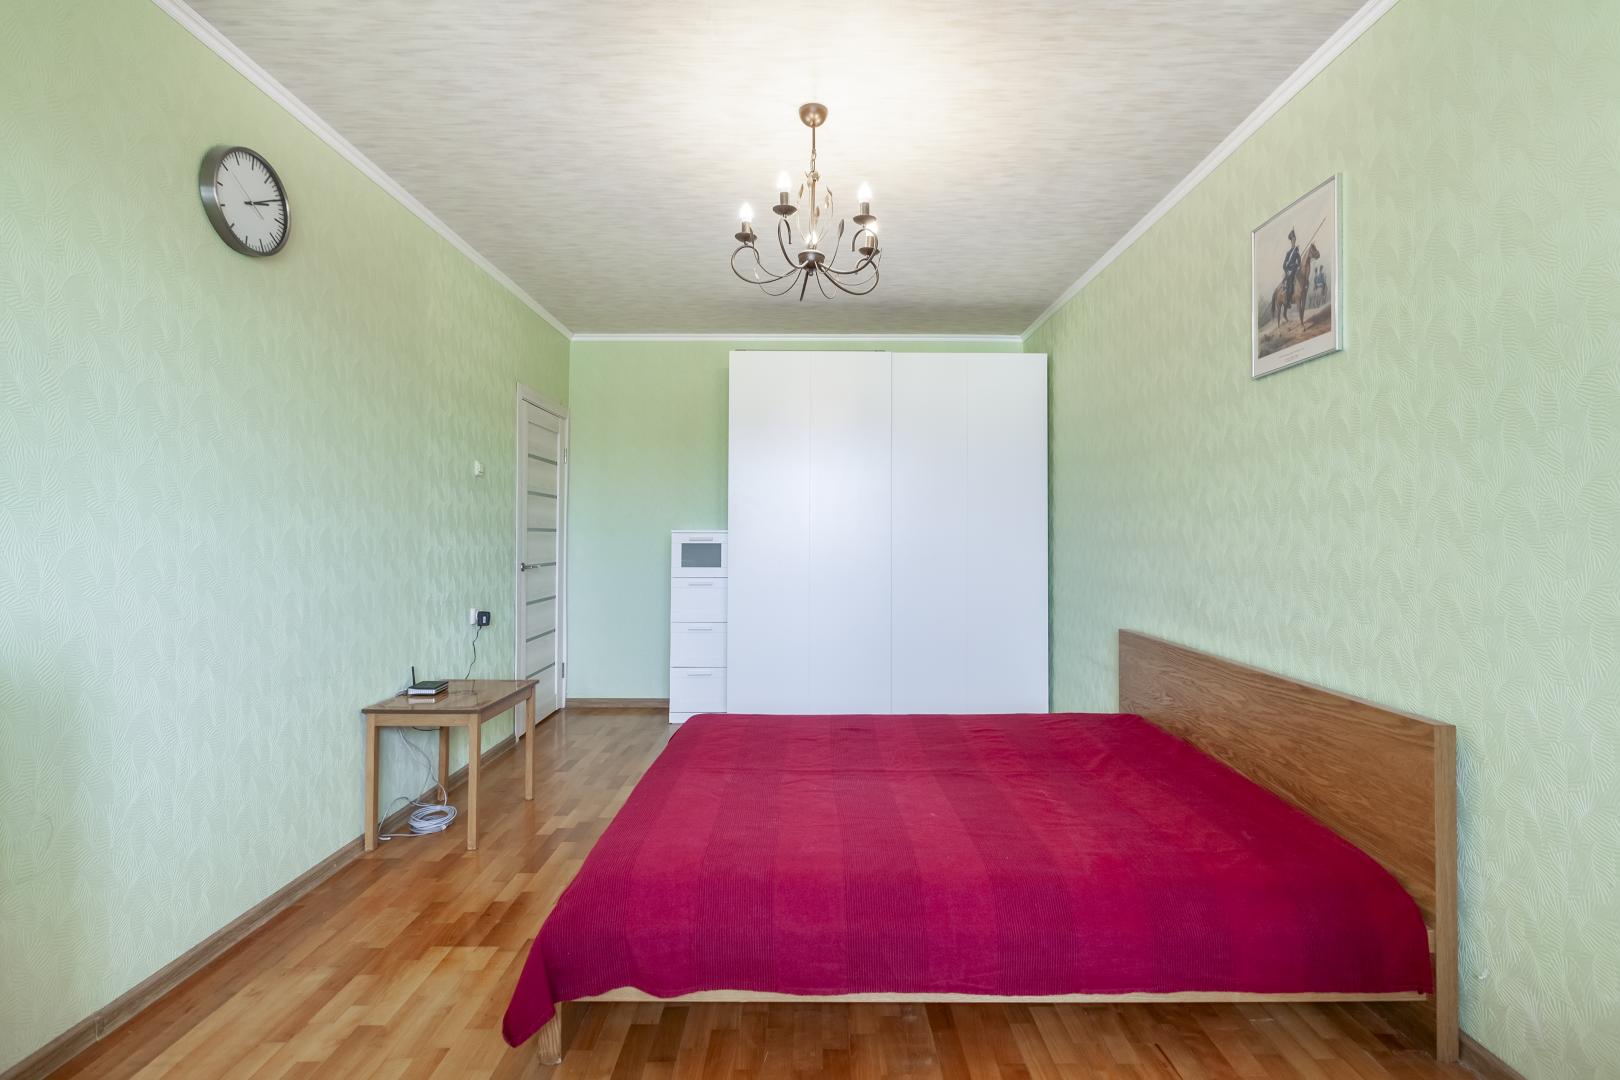 Продам квартиру в Москве по адресу Бескудниковский бульвар, 32к6, площадь 782 квм Недвижимость Москва (Россия) 2 кв